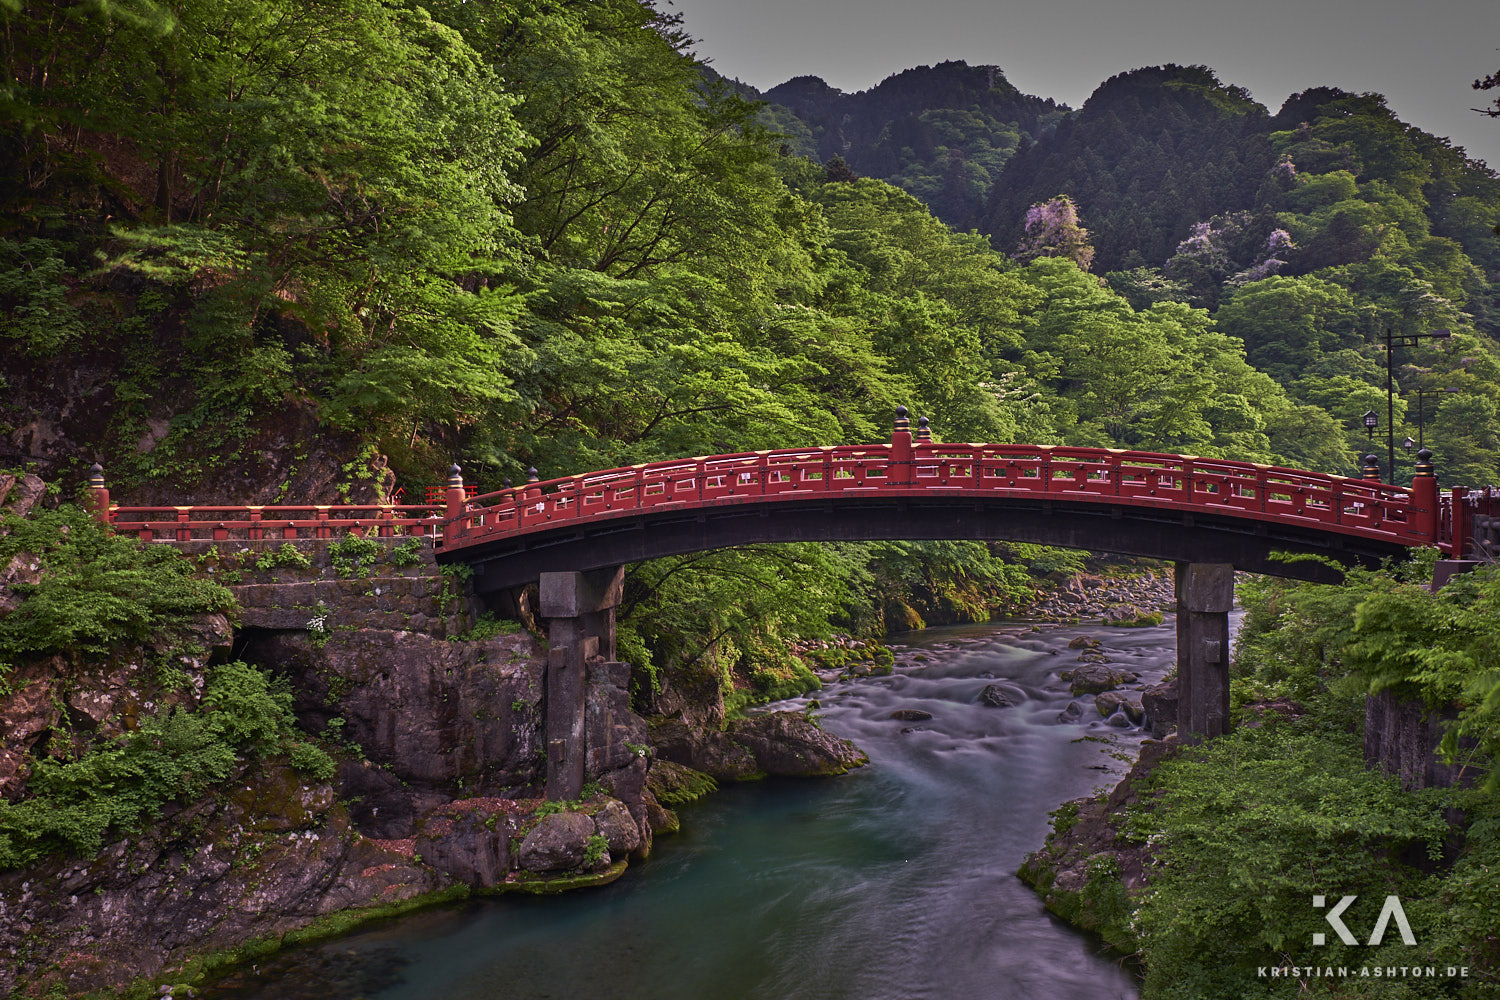 The beautiful Shinkyo bridge in Nikko